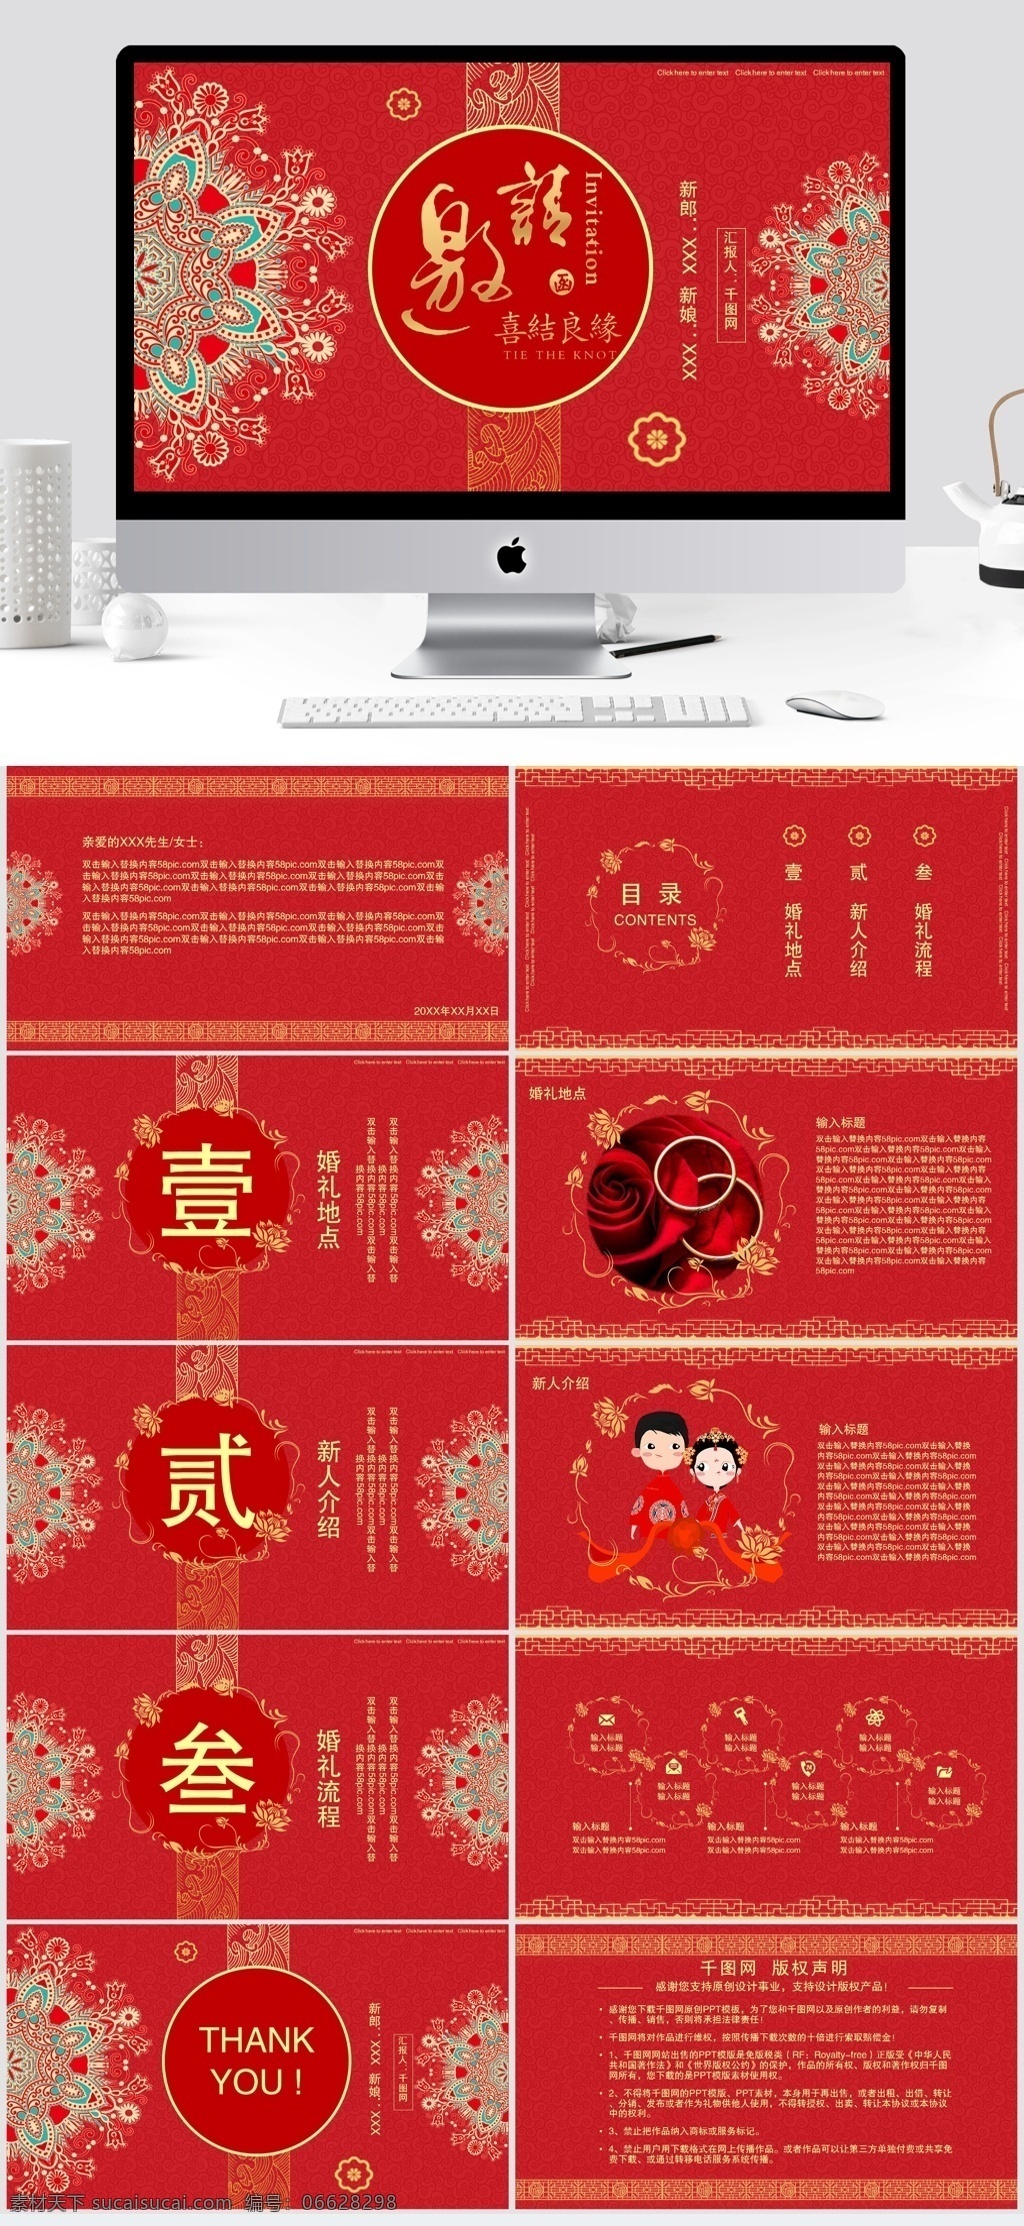 中国 风 传统 婚礼 邀请函 中国风 红色 喜结良缘